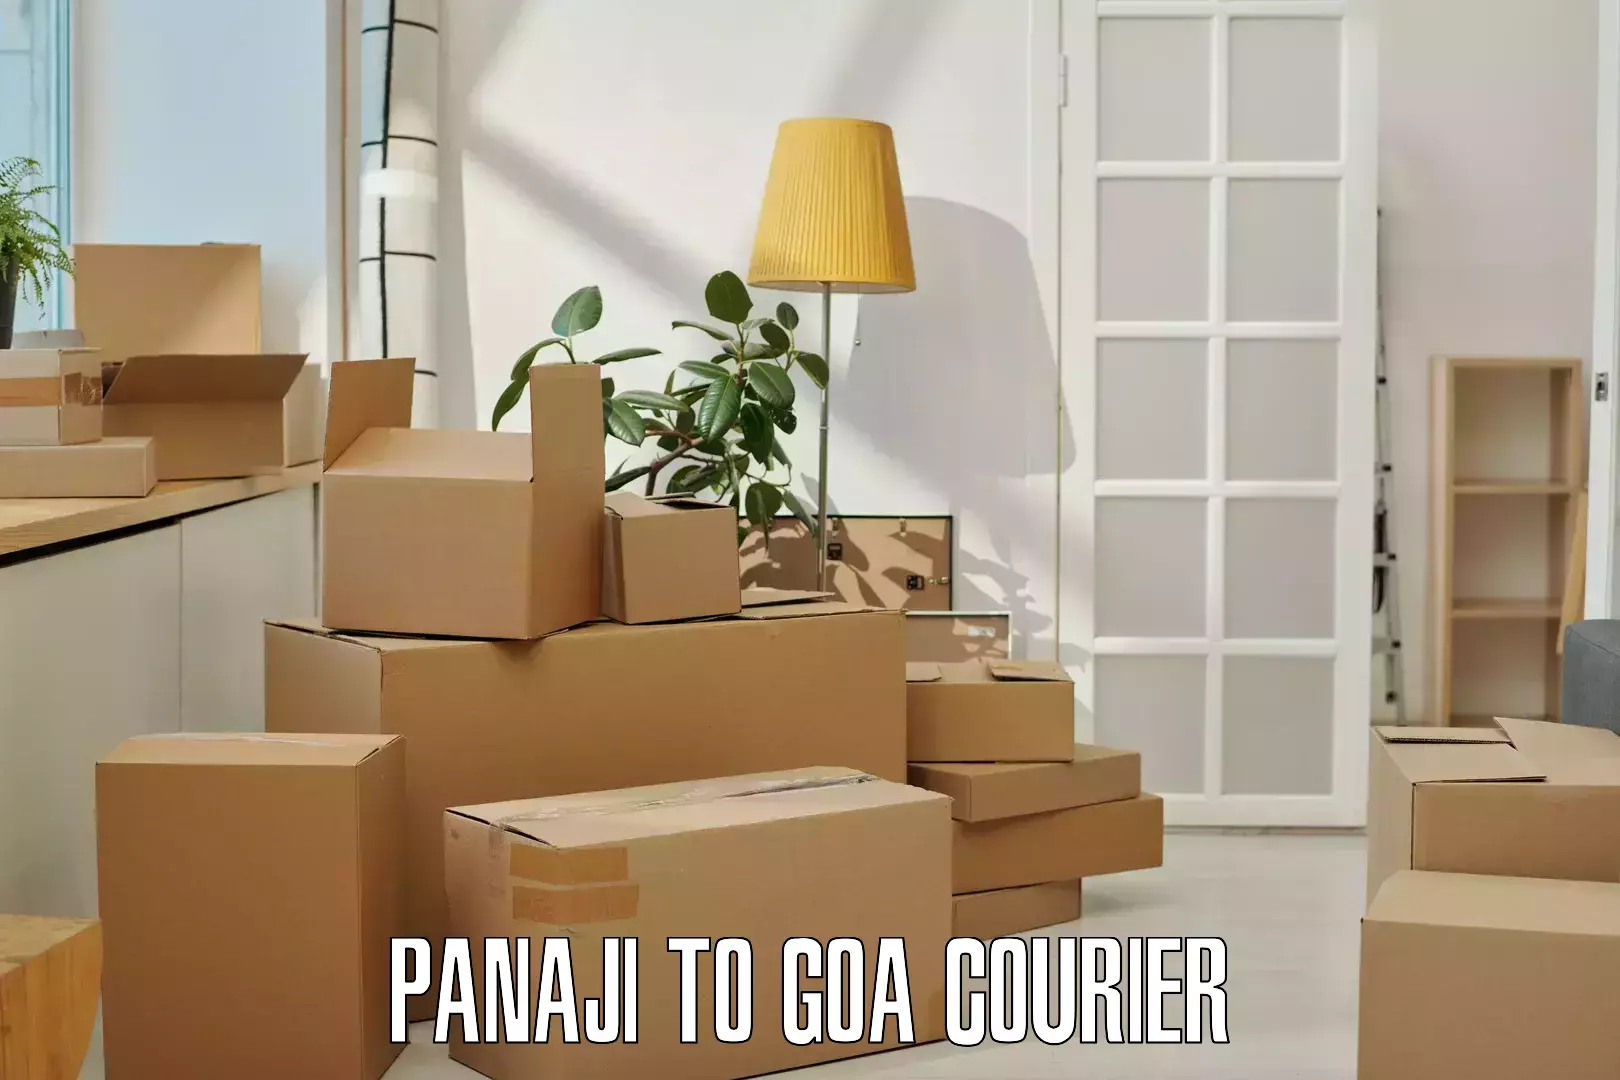 Speedy delivery service Panaji to Panjim